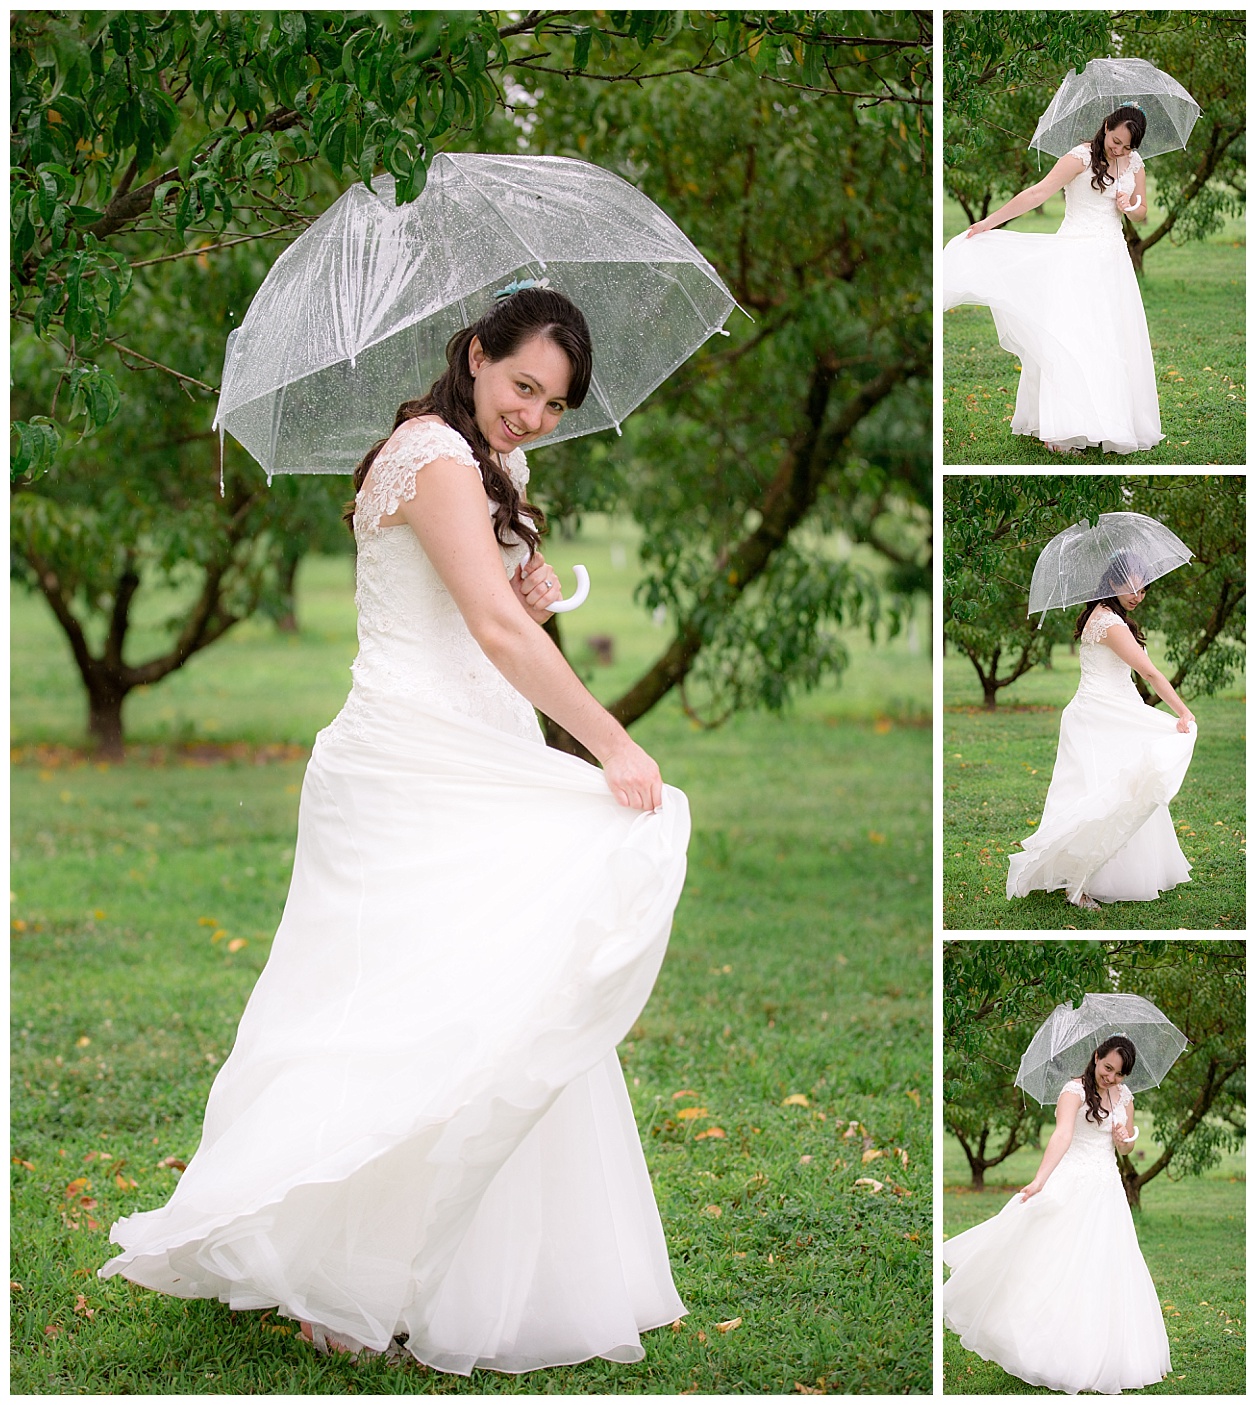 Lafayette-wedding-wea-creek-orchard-rainy (11).jpg